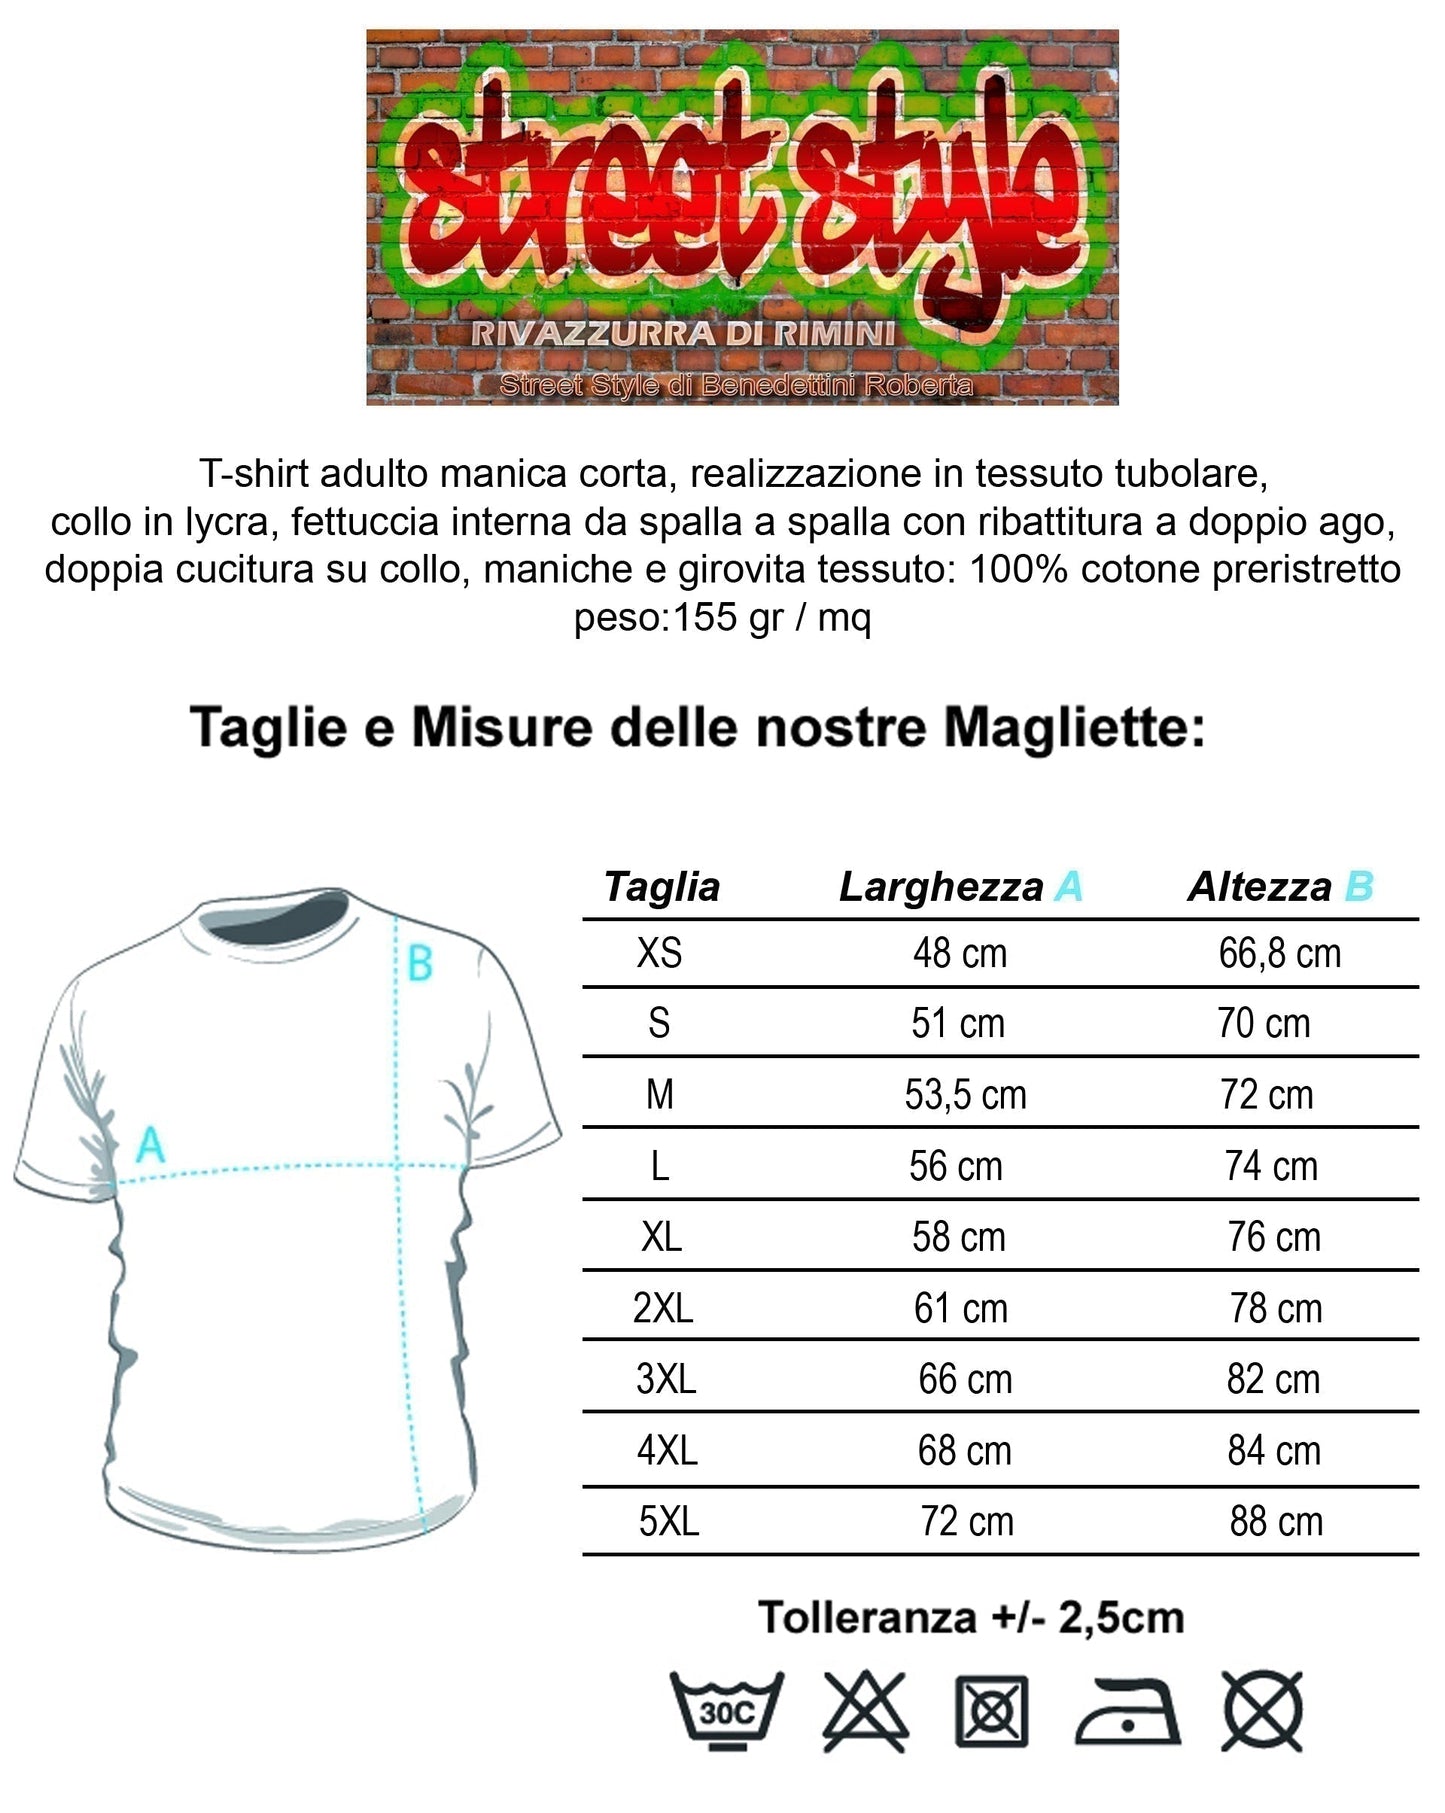 The Legend Il Bello il Brutto e il Cattivo Poster Soggetto Cinema Attori 18-80-2 T-shirt Urban Men Uomo 100% Cotone Pettinato JK